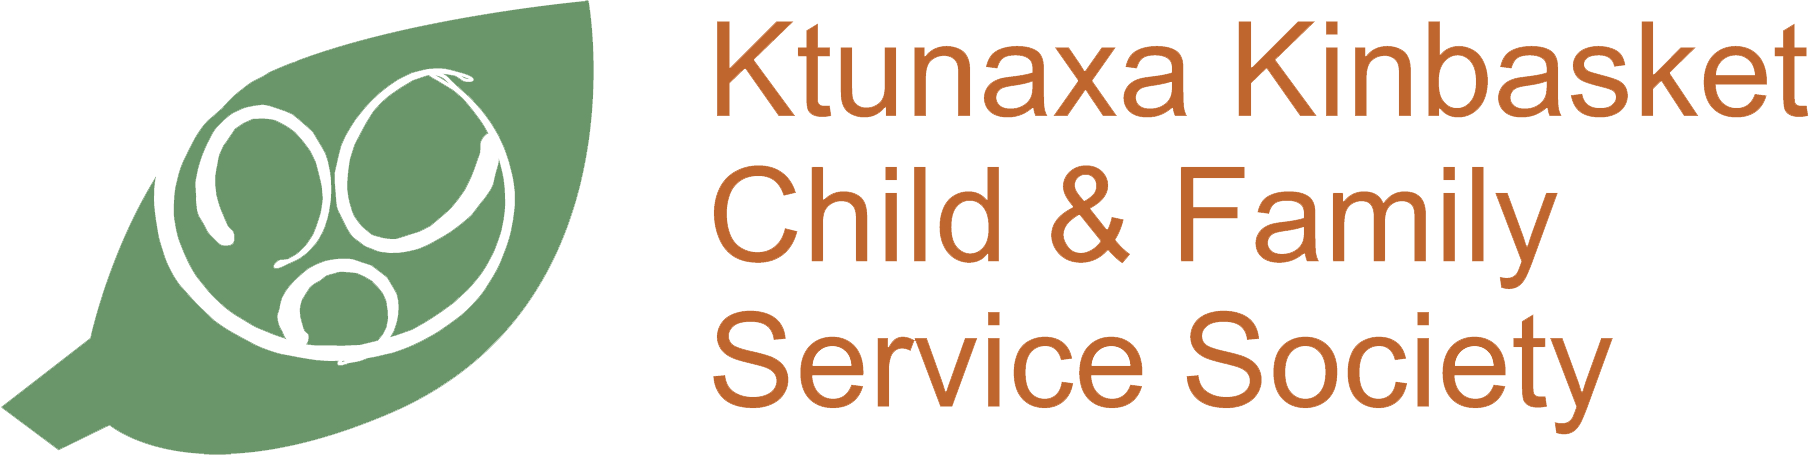 Ktunaxa Kinbasket Child and Family Services Society